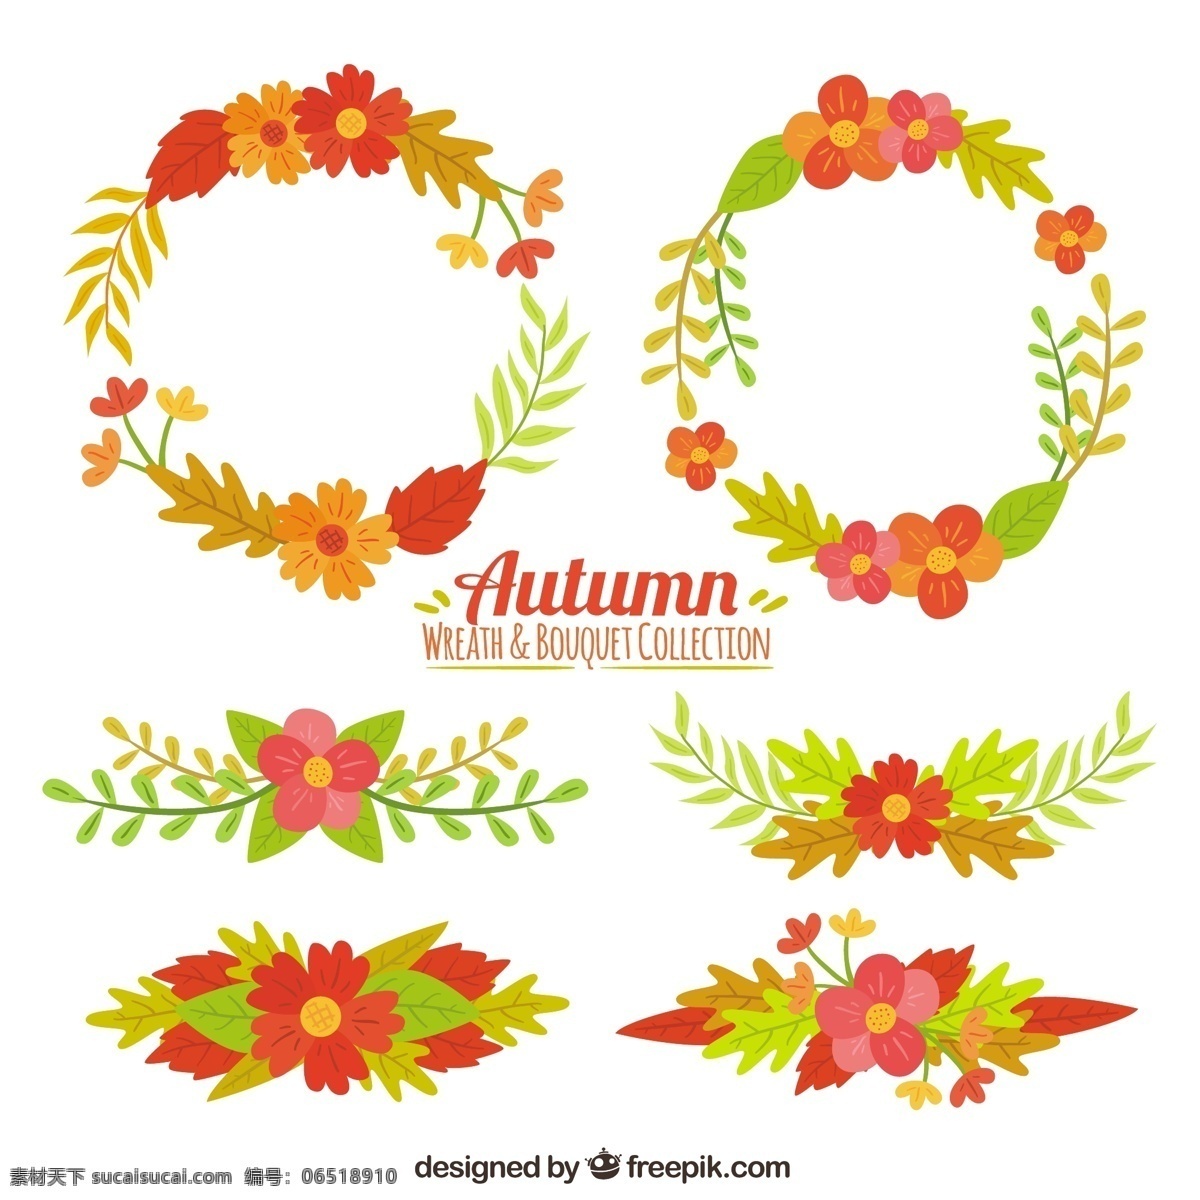 秋天 饰品 收藏 树叶 自然 装饰品 颜色 温暖 树枝 秋天的树叶 季节 包装 秋天的叶子 收集 落叶 温暖的颜色